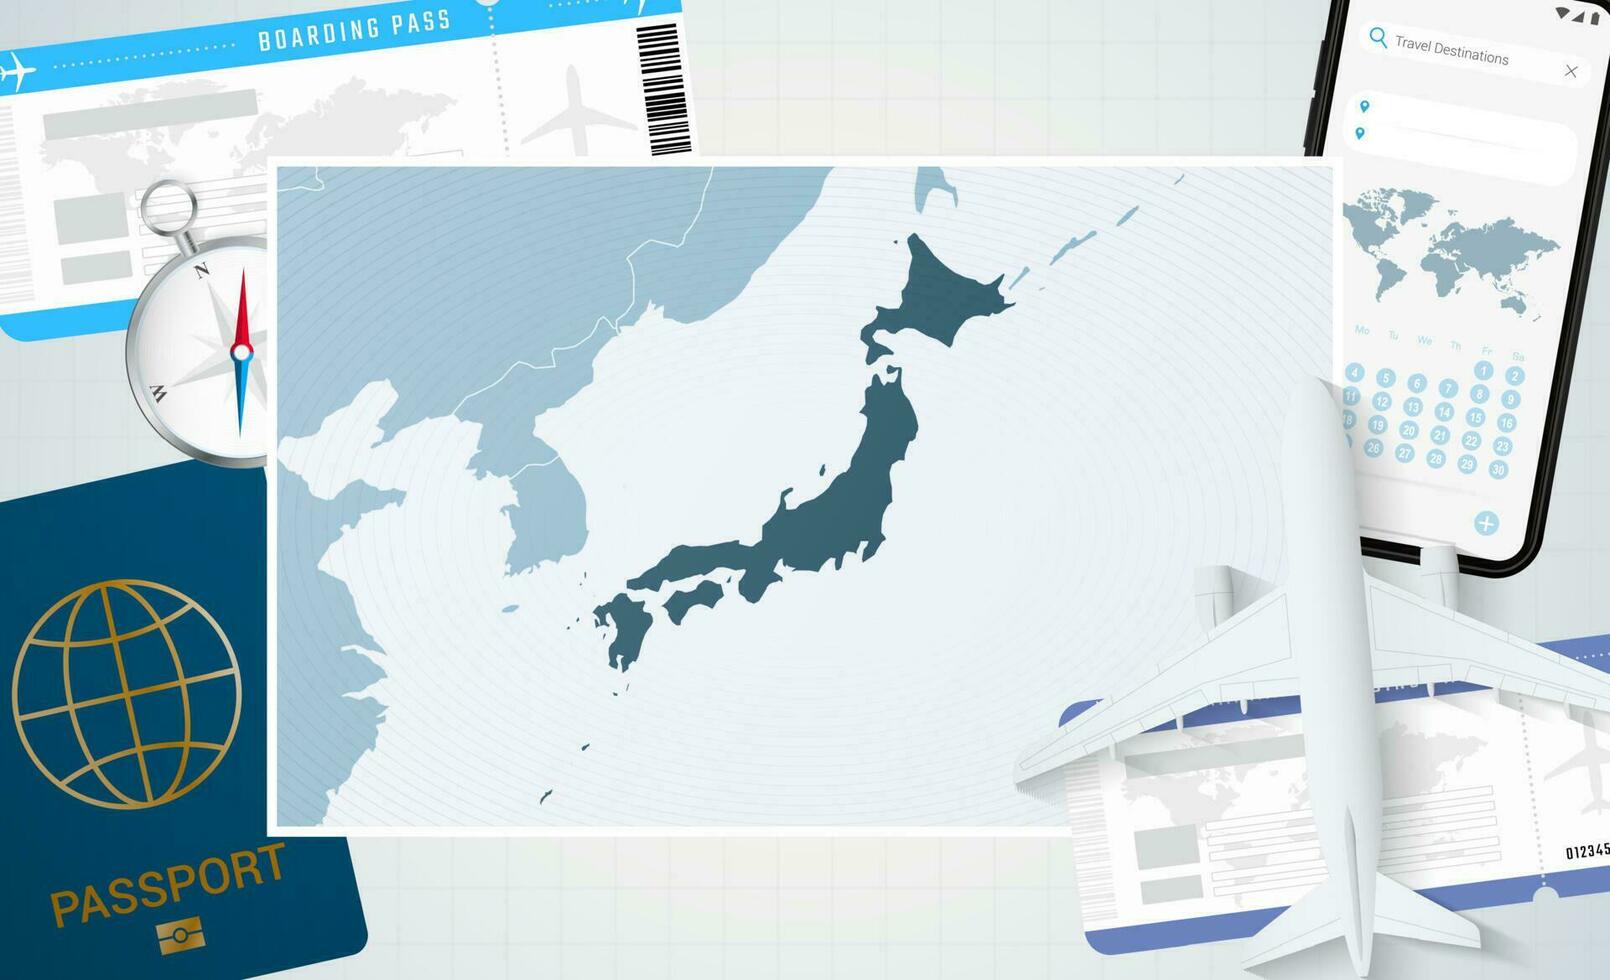 reis naar Japan, illustratie met een kaart van Japan. achtergrond met vliegtuig, cel telefoon, paspoort, kompas en kaartjes. vector